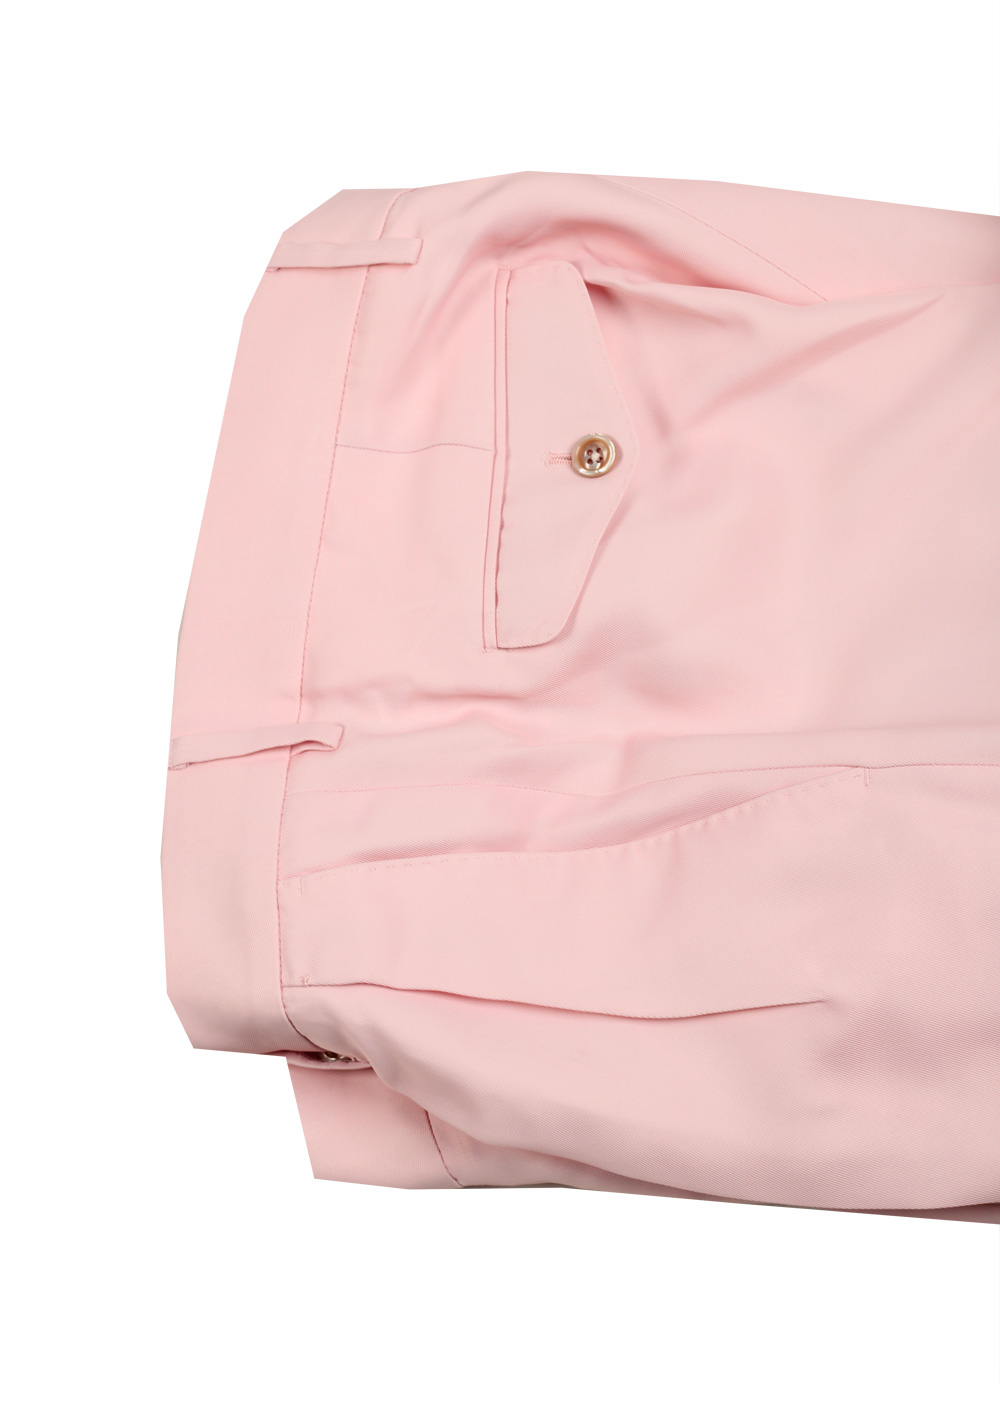 TOM FORD Atticus Pink Tuxedo Suit Size 46 / 36R U.S. | Costume Limité